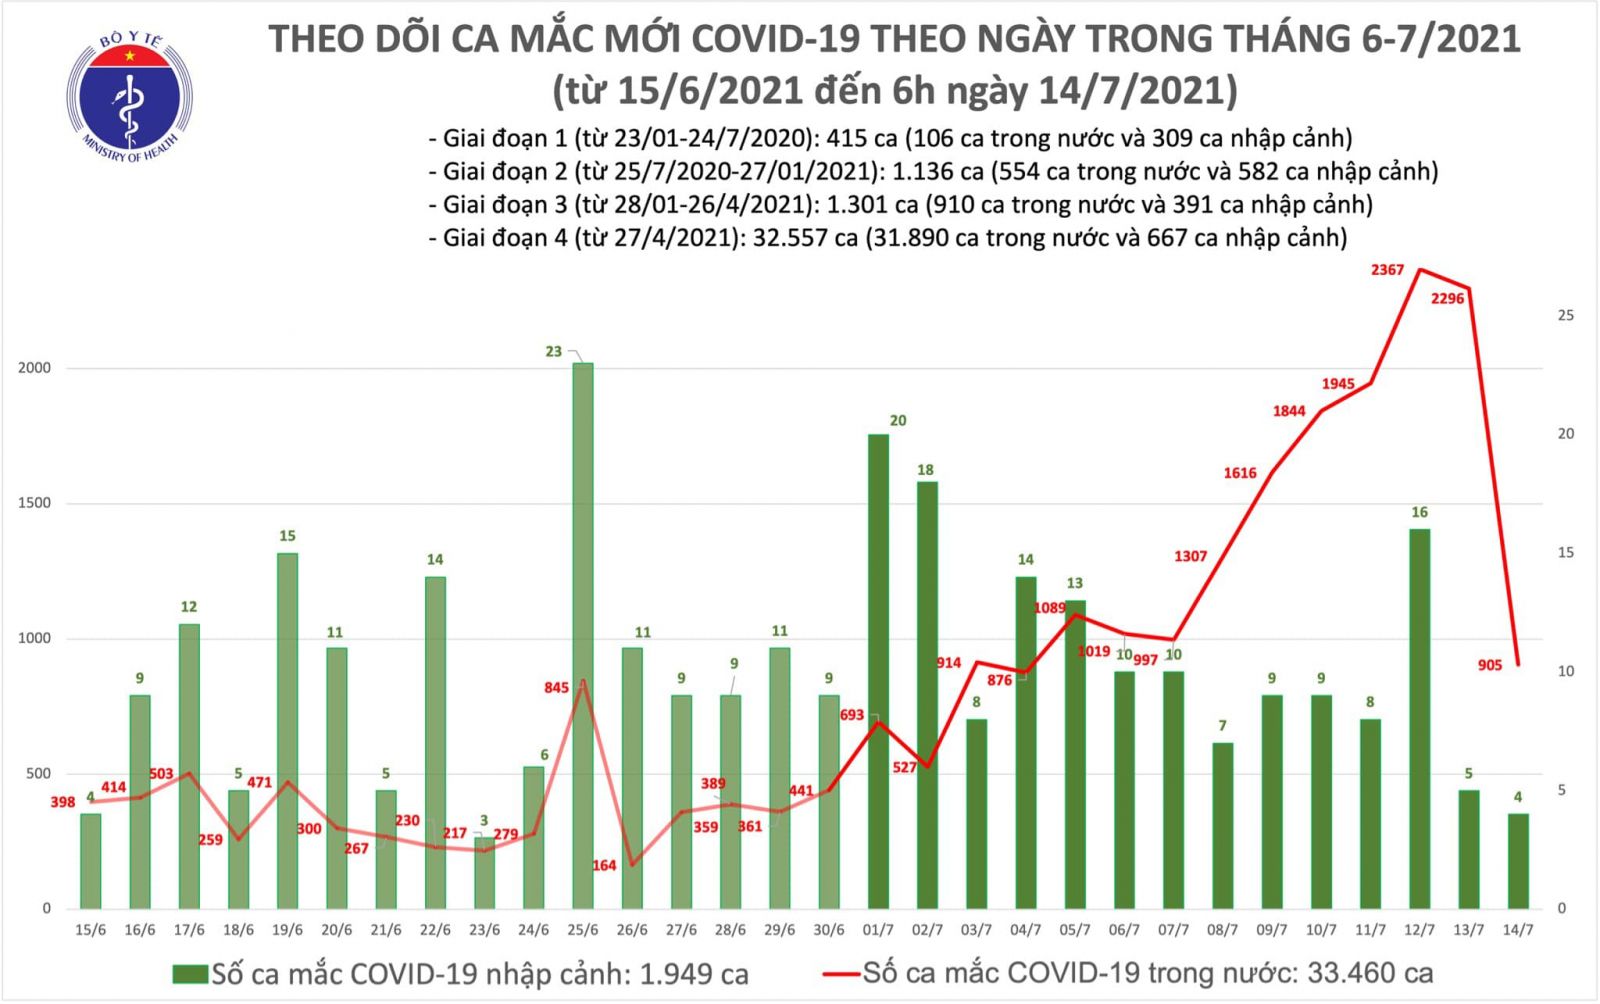 Sáng 14/7: Thêm 909 ca mắc COVID-19, TP Hồ Chí Minh vẫn nhiều nhất với 666 ca